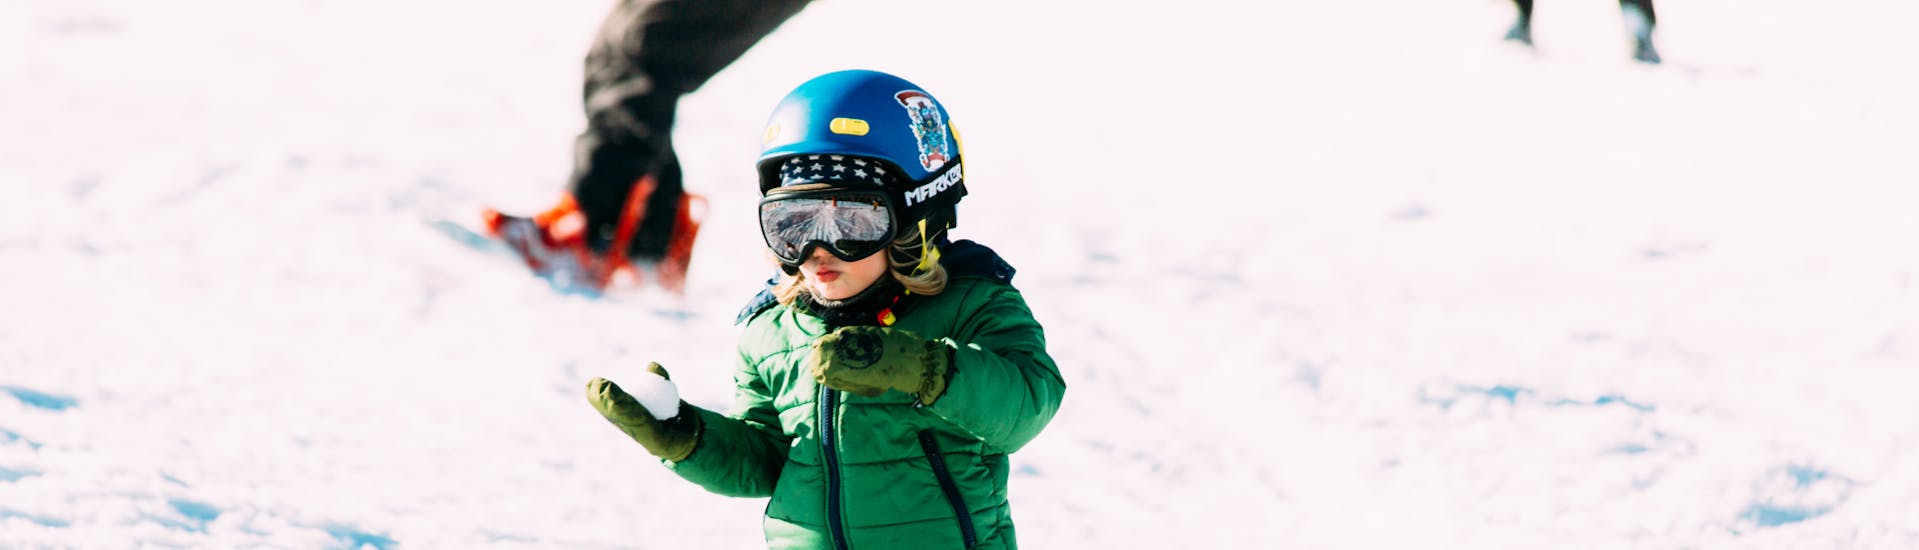 Lezioni di sci per bambini a partire da 7 anni per tutti i livelli.